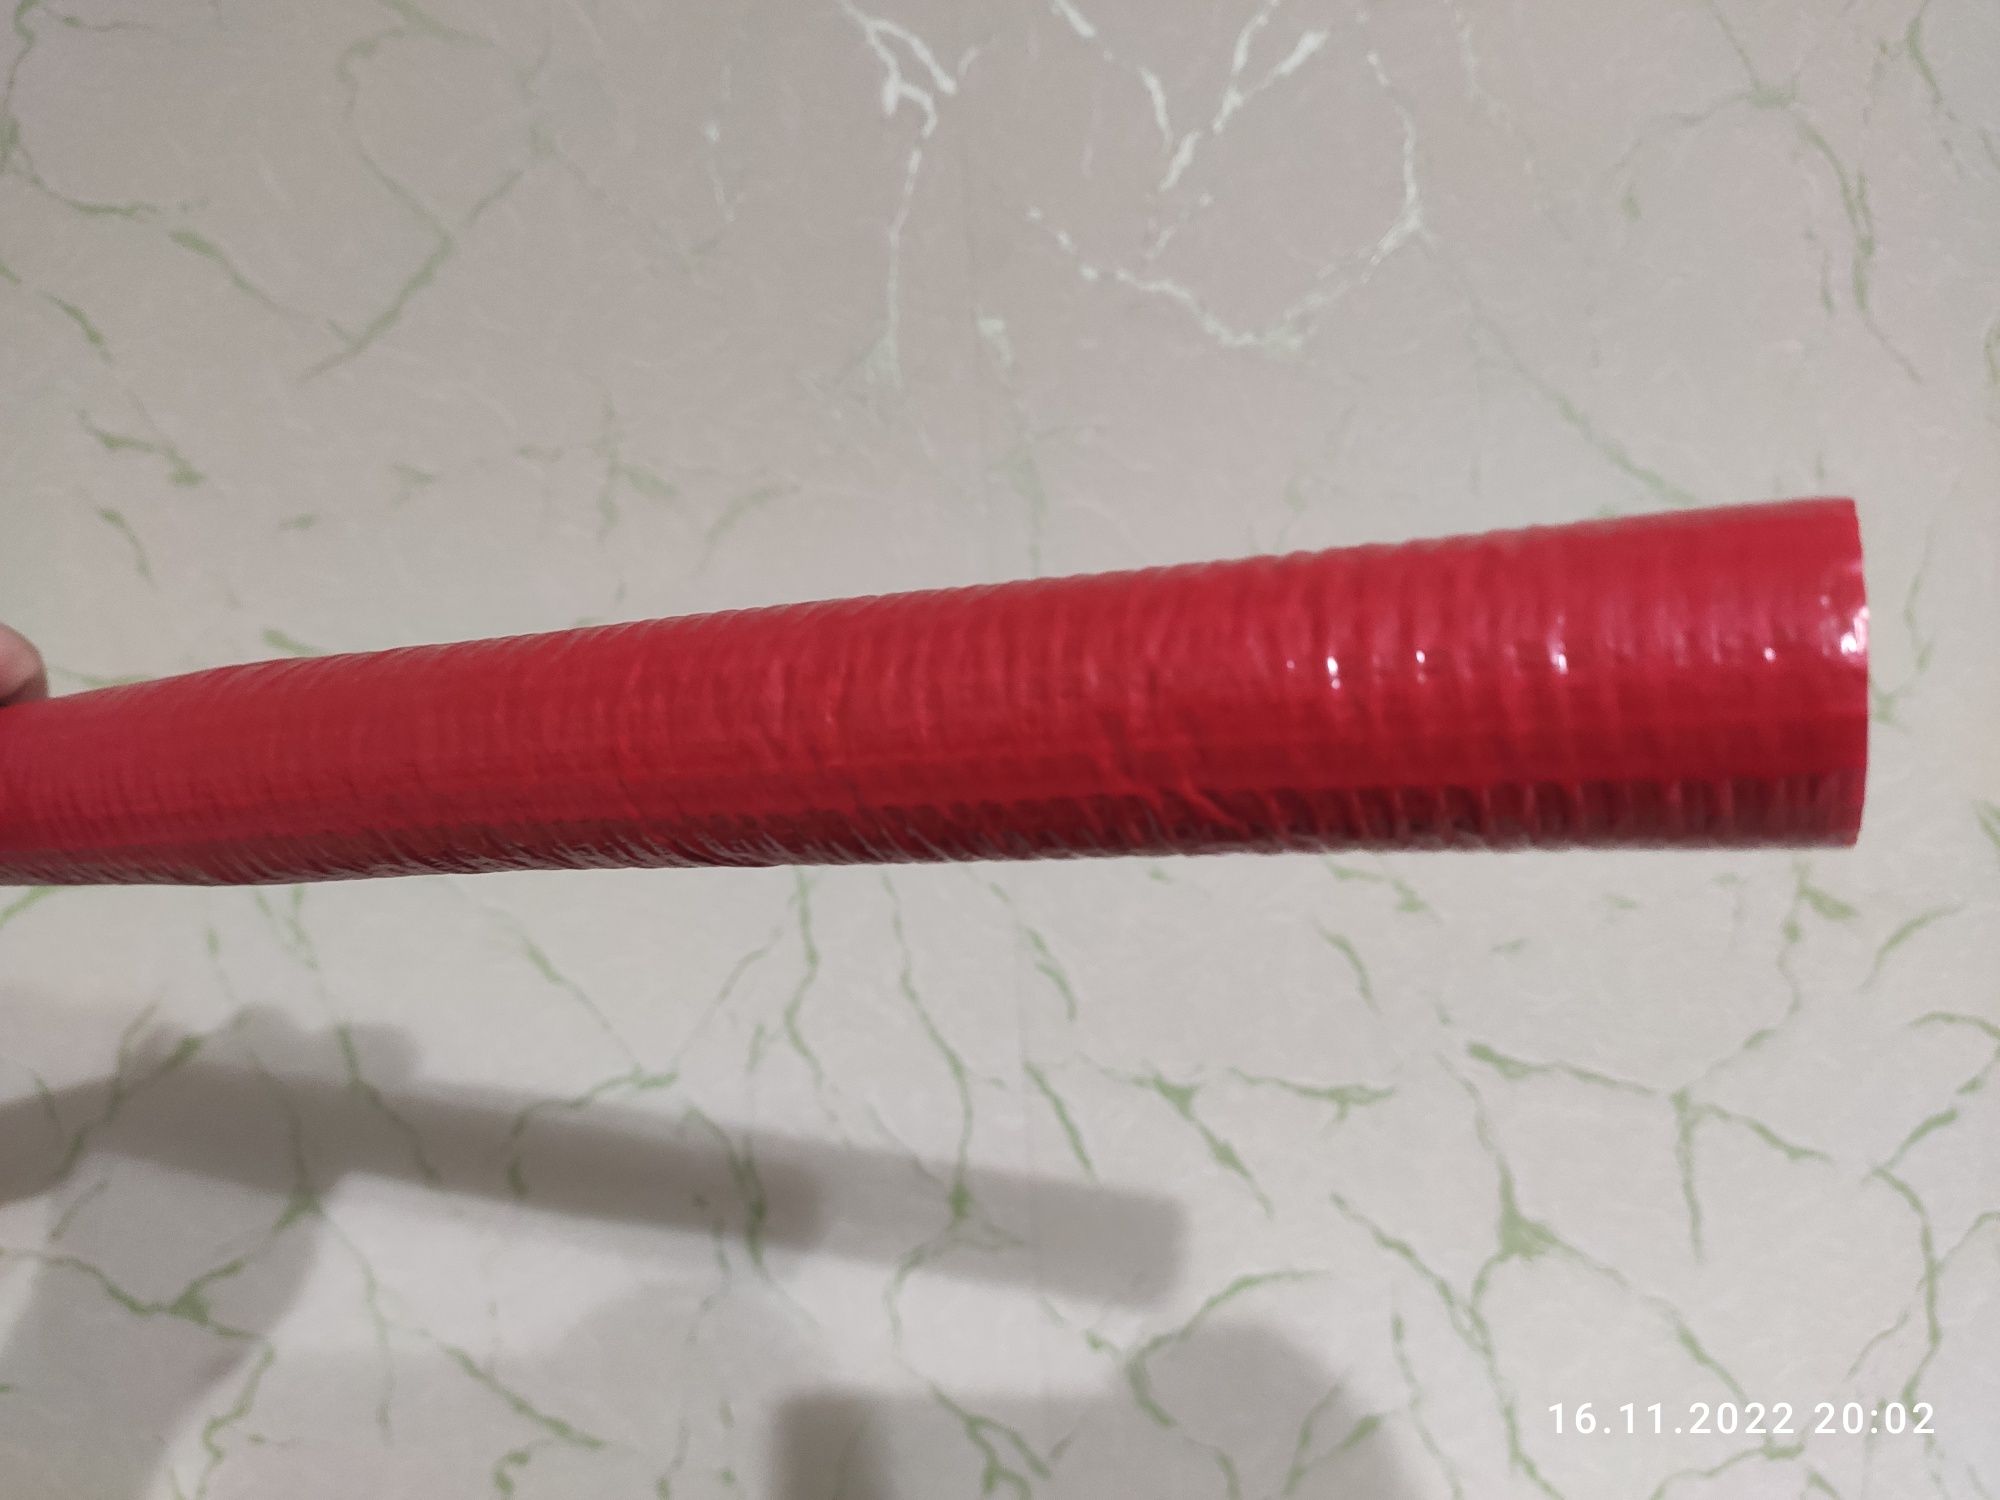 Полиэтиленовая теплоизоляция для труб Ø 22 мм и толщиной изоляции 6мм